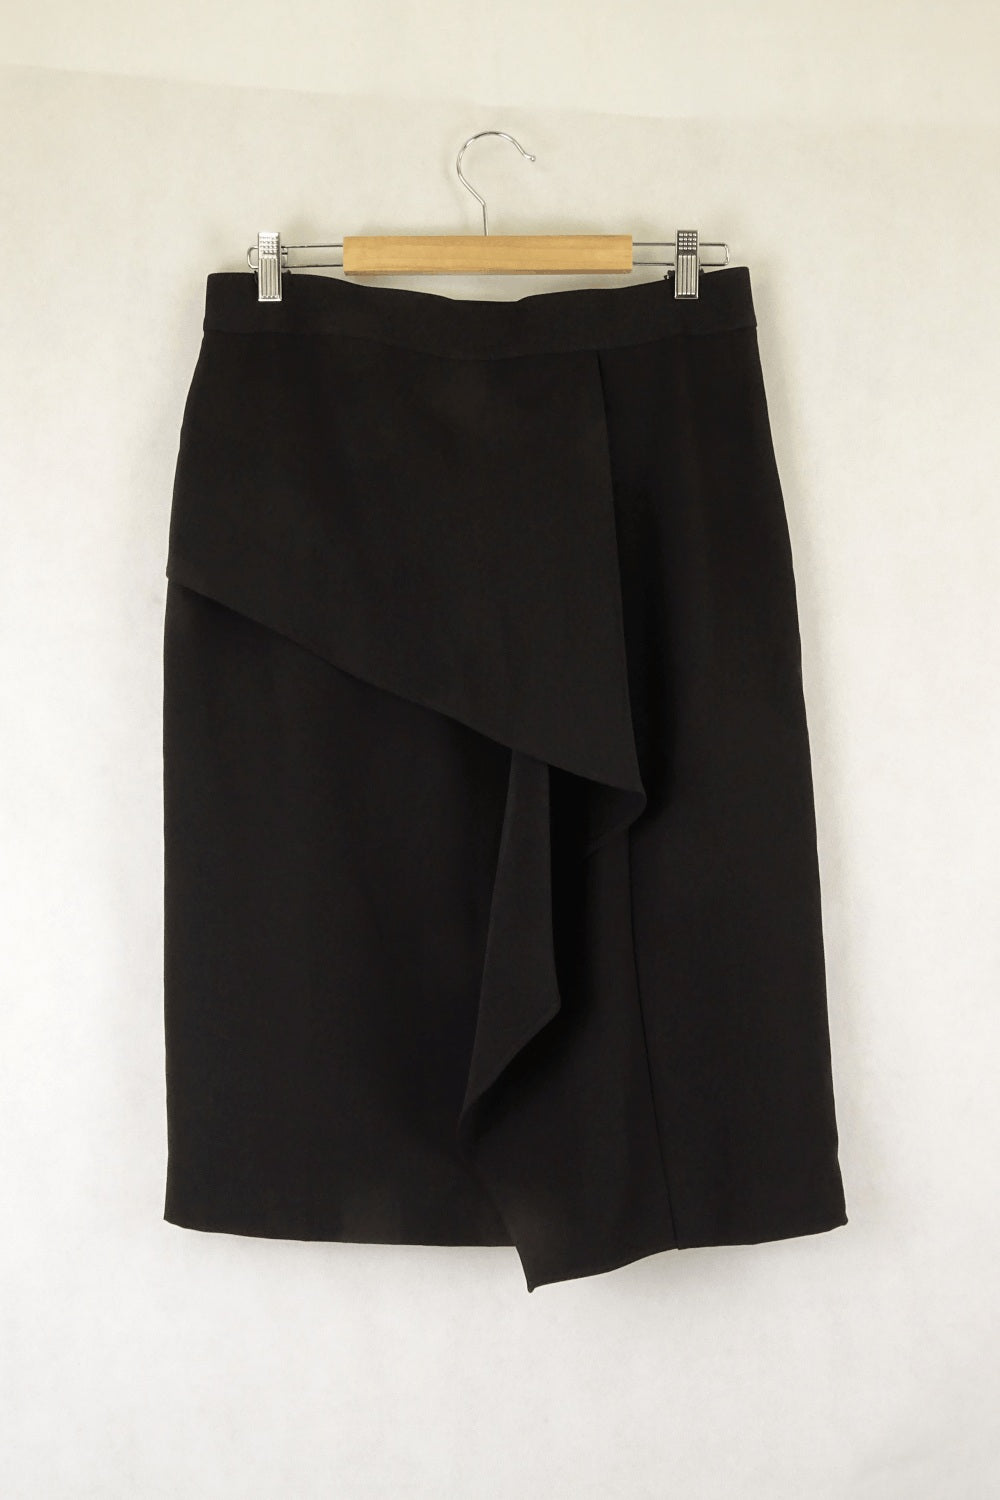 Basque Black Skirt 14